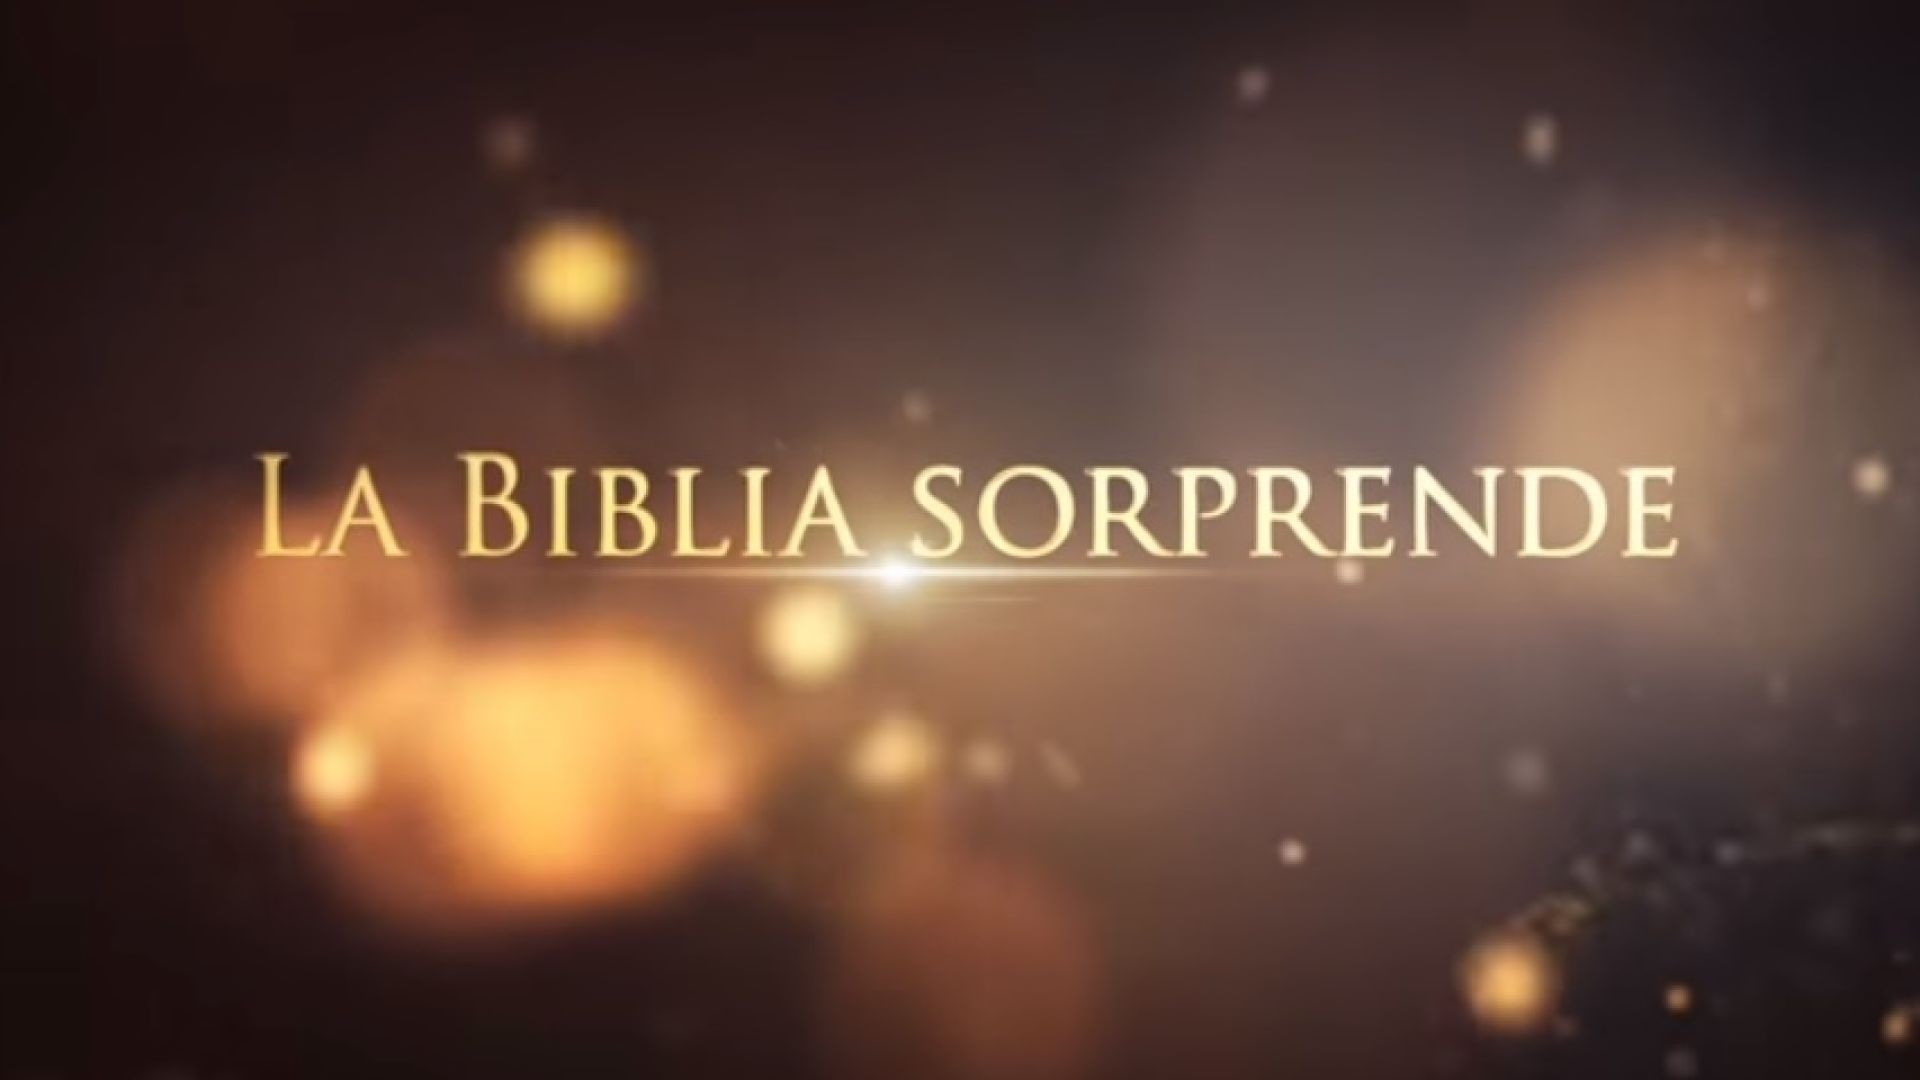 17 Daniel, profeta del futuro | La Biblia Sorprende 1ra temporada - Juan Surroca